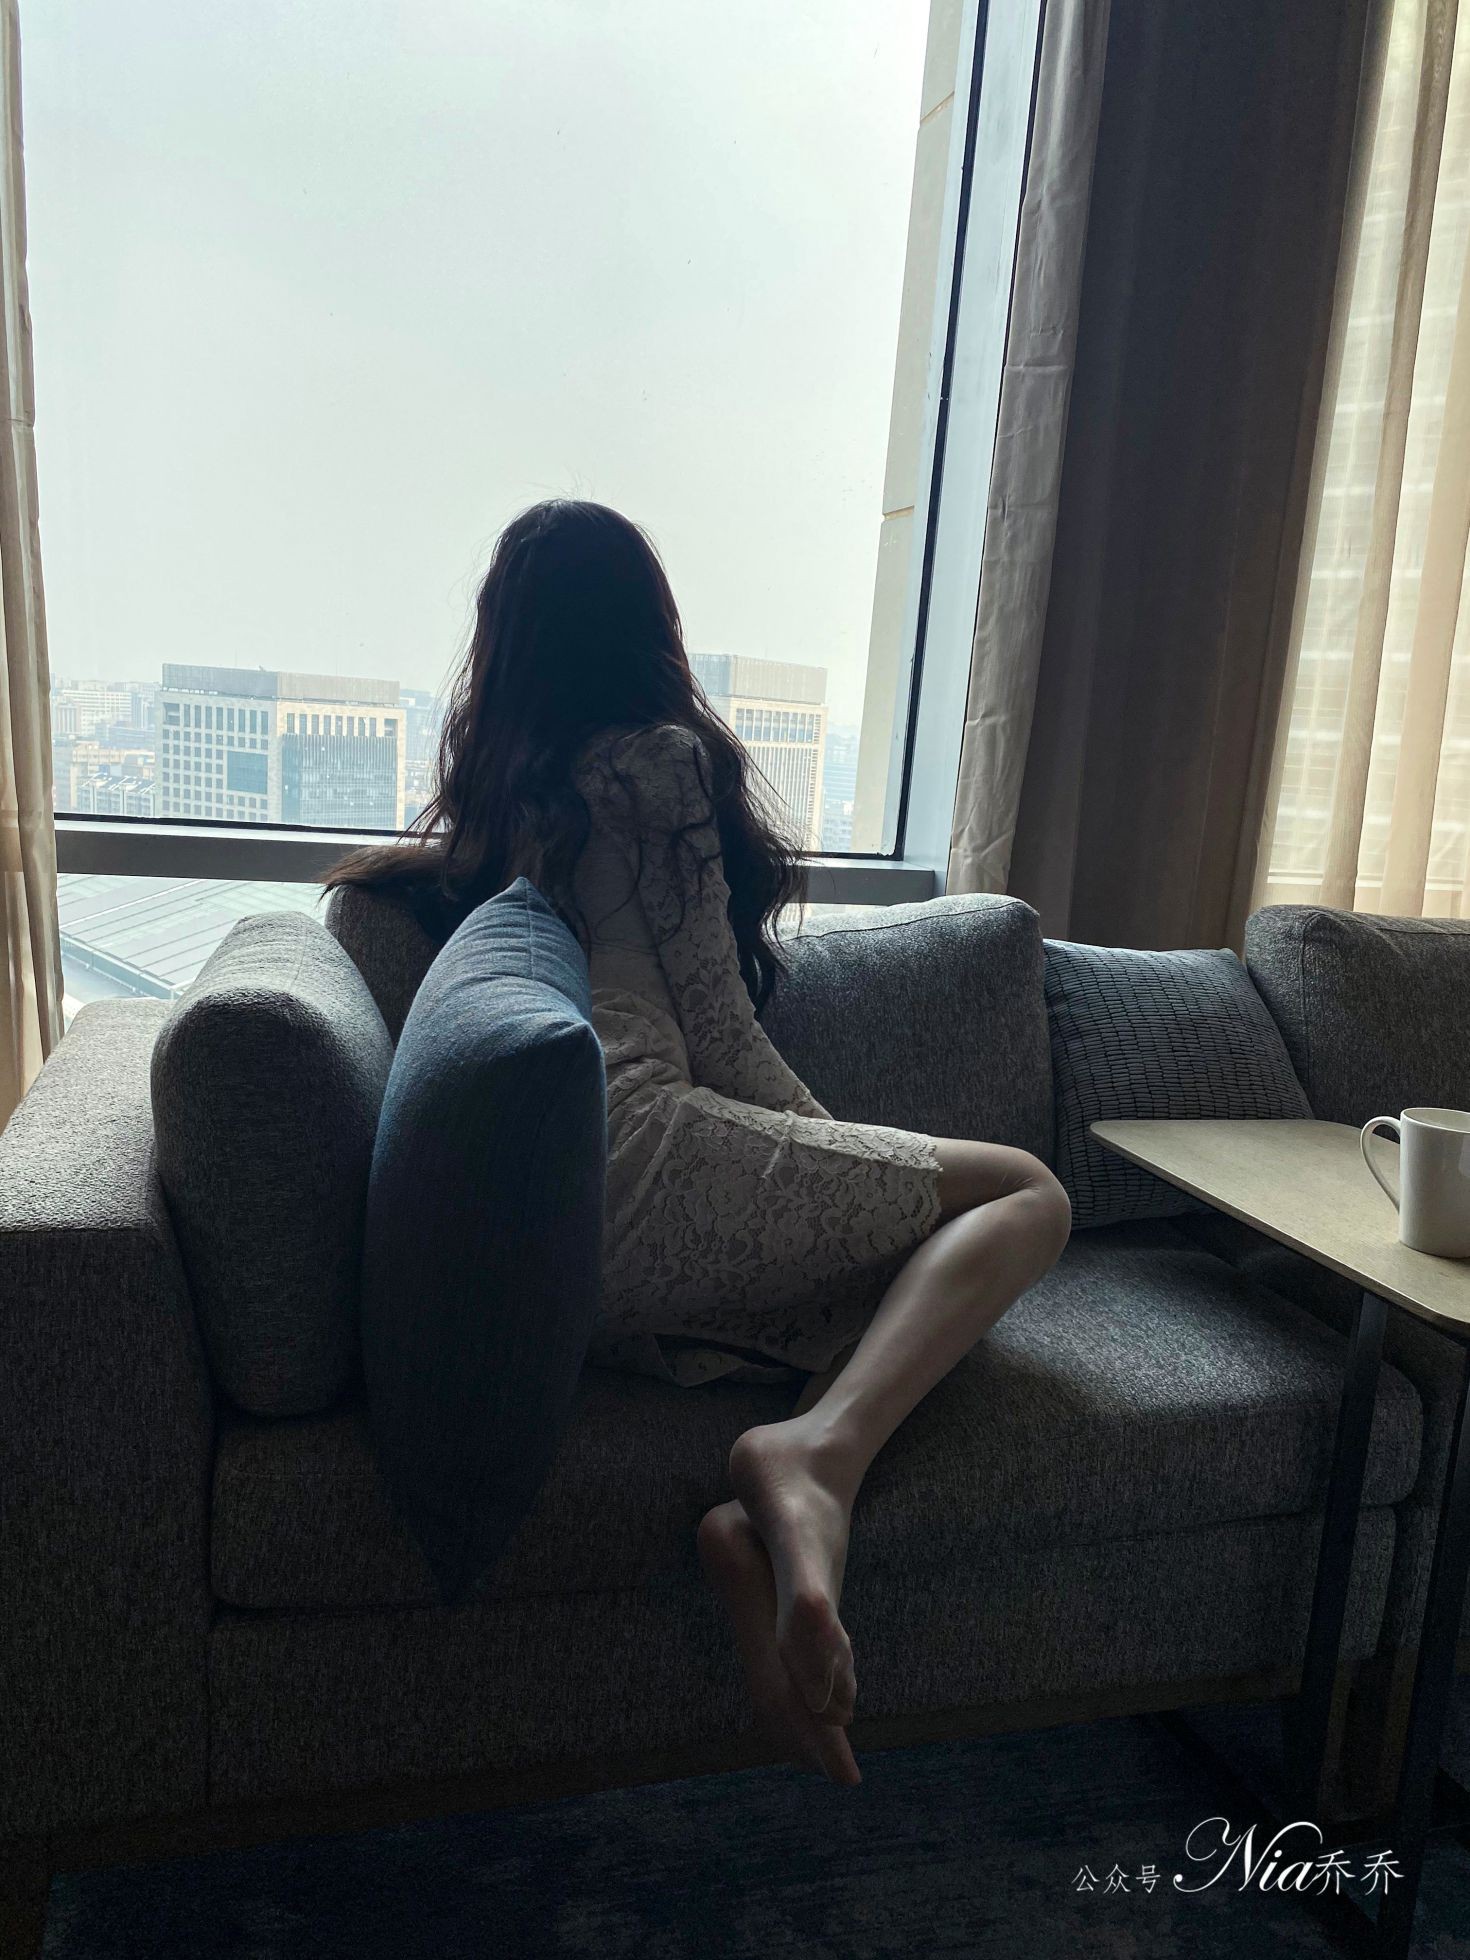 Nia乔乔美女网红性感自拍私摄写真图片家有娇妻蕾丝包臀裙美腿 (25)